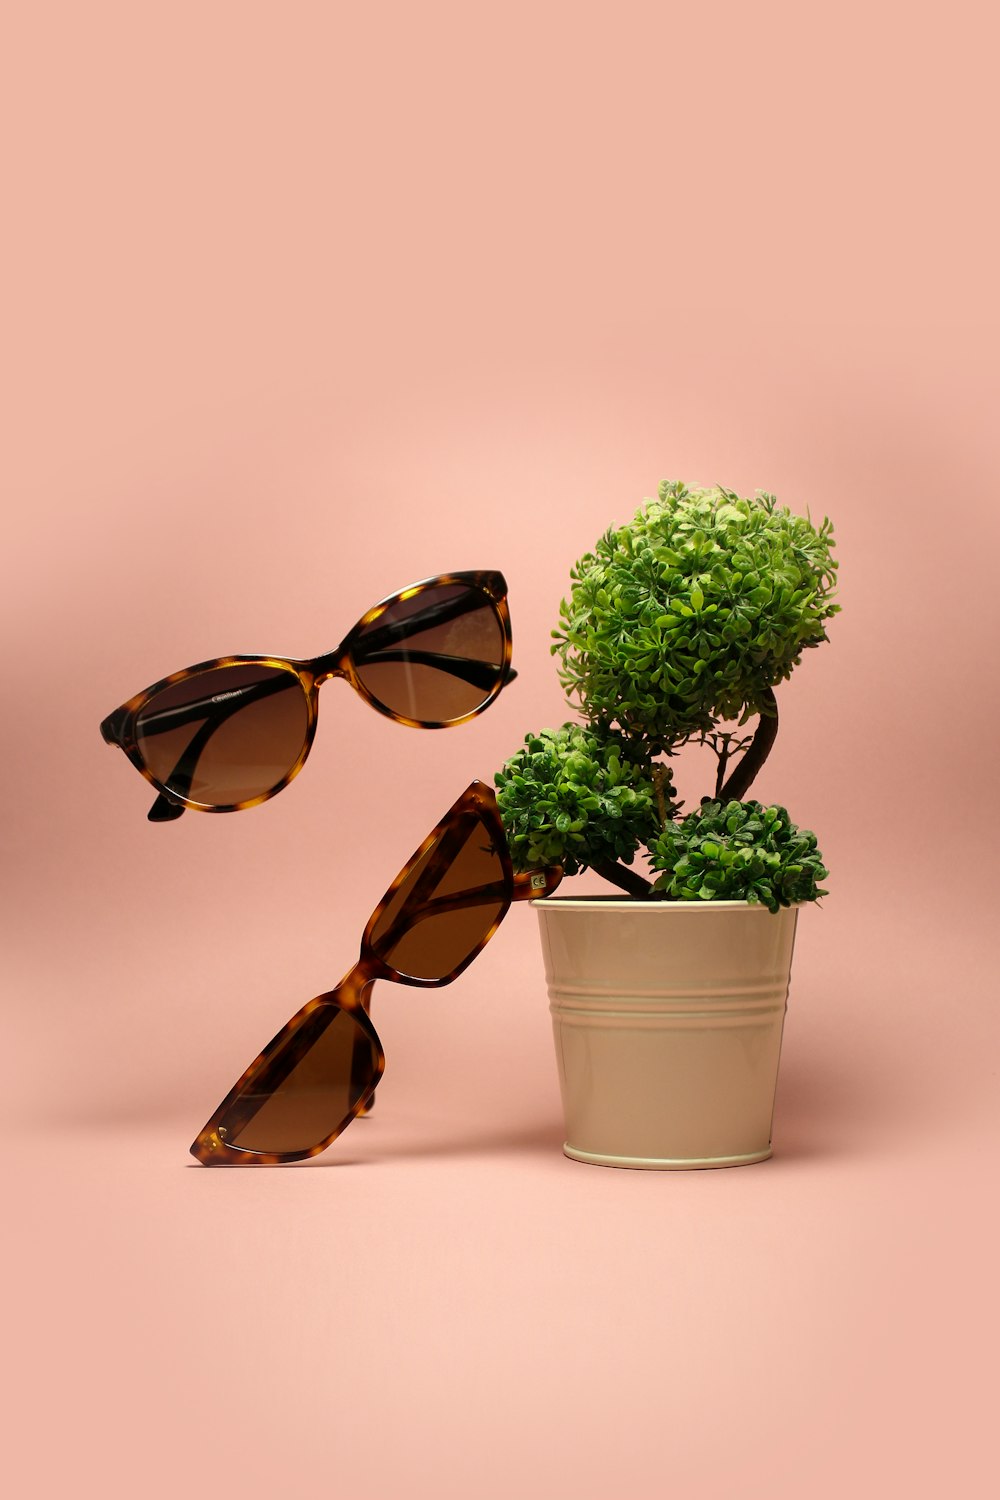 緑の葉の植物のそばに2つの茶色のサングラス